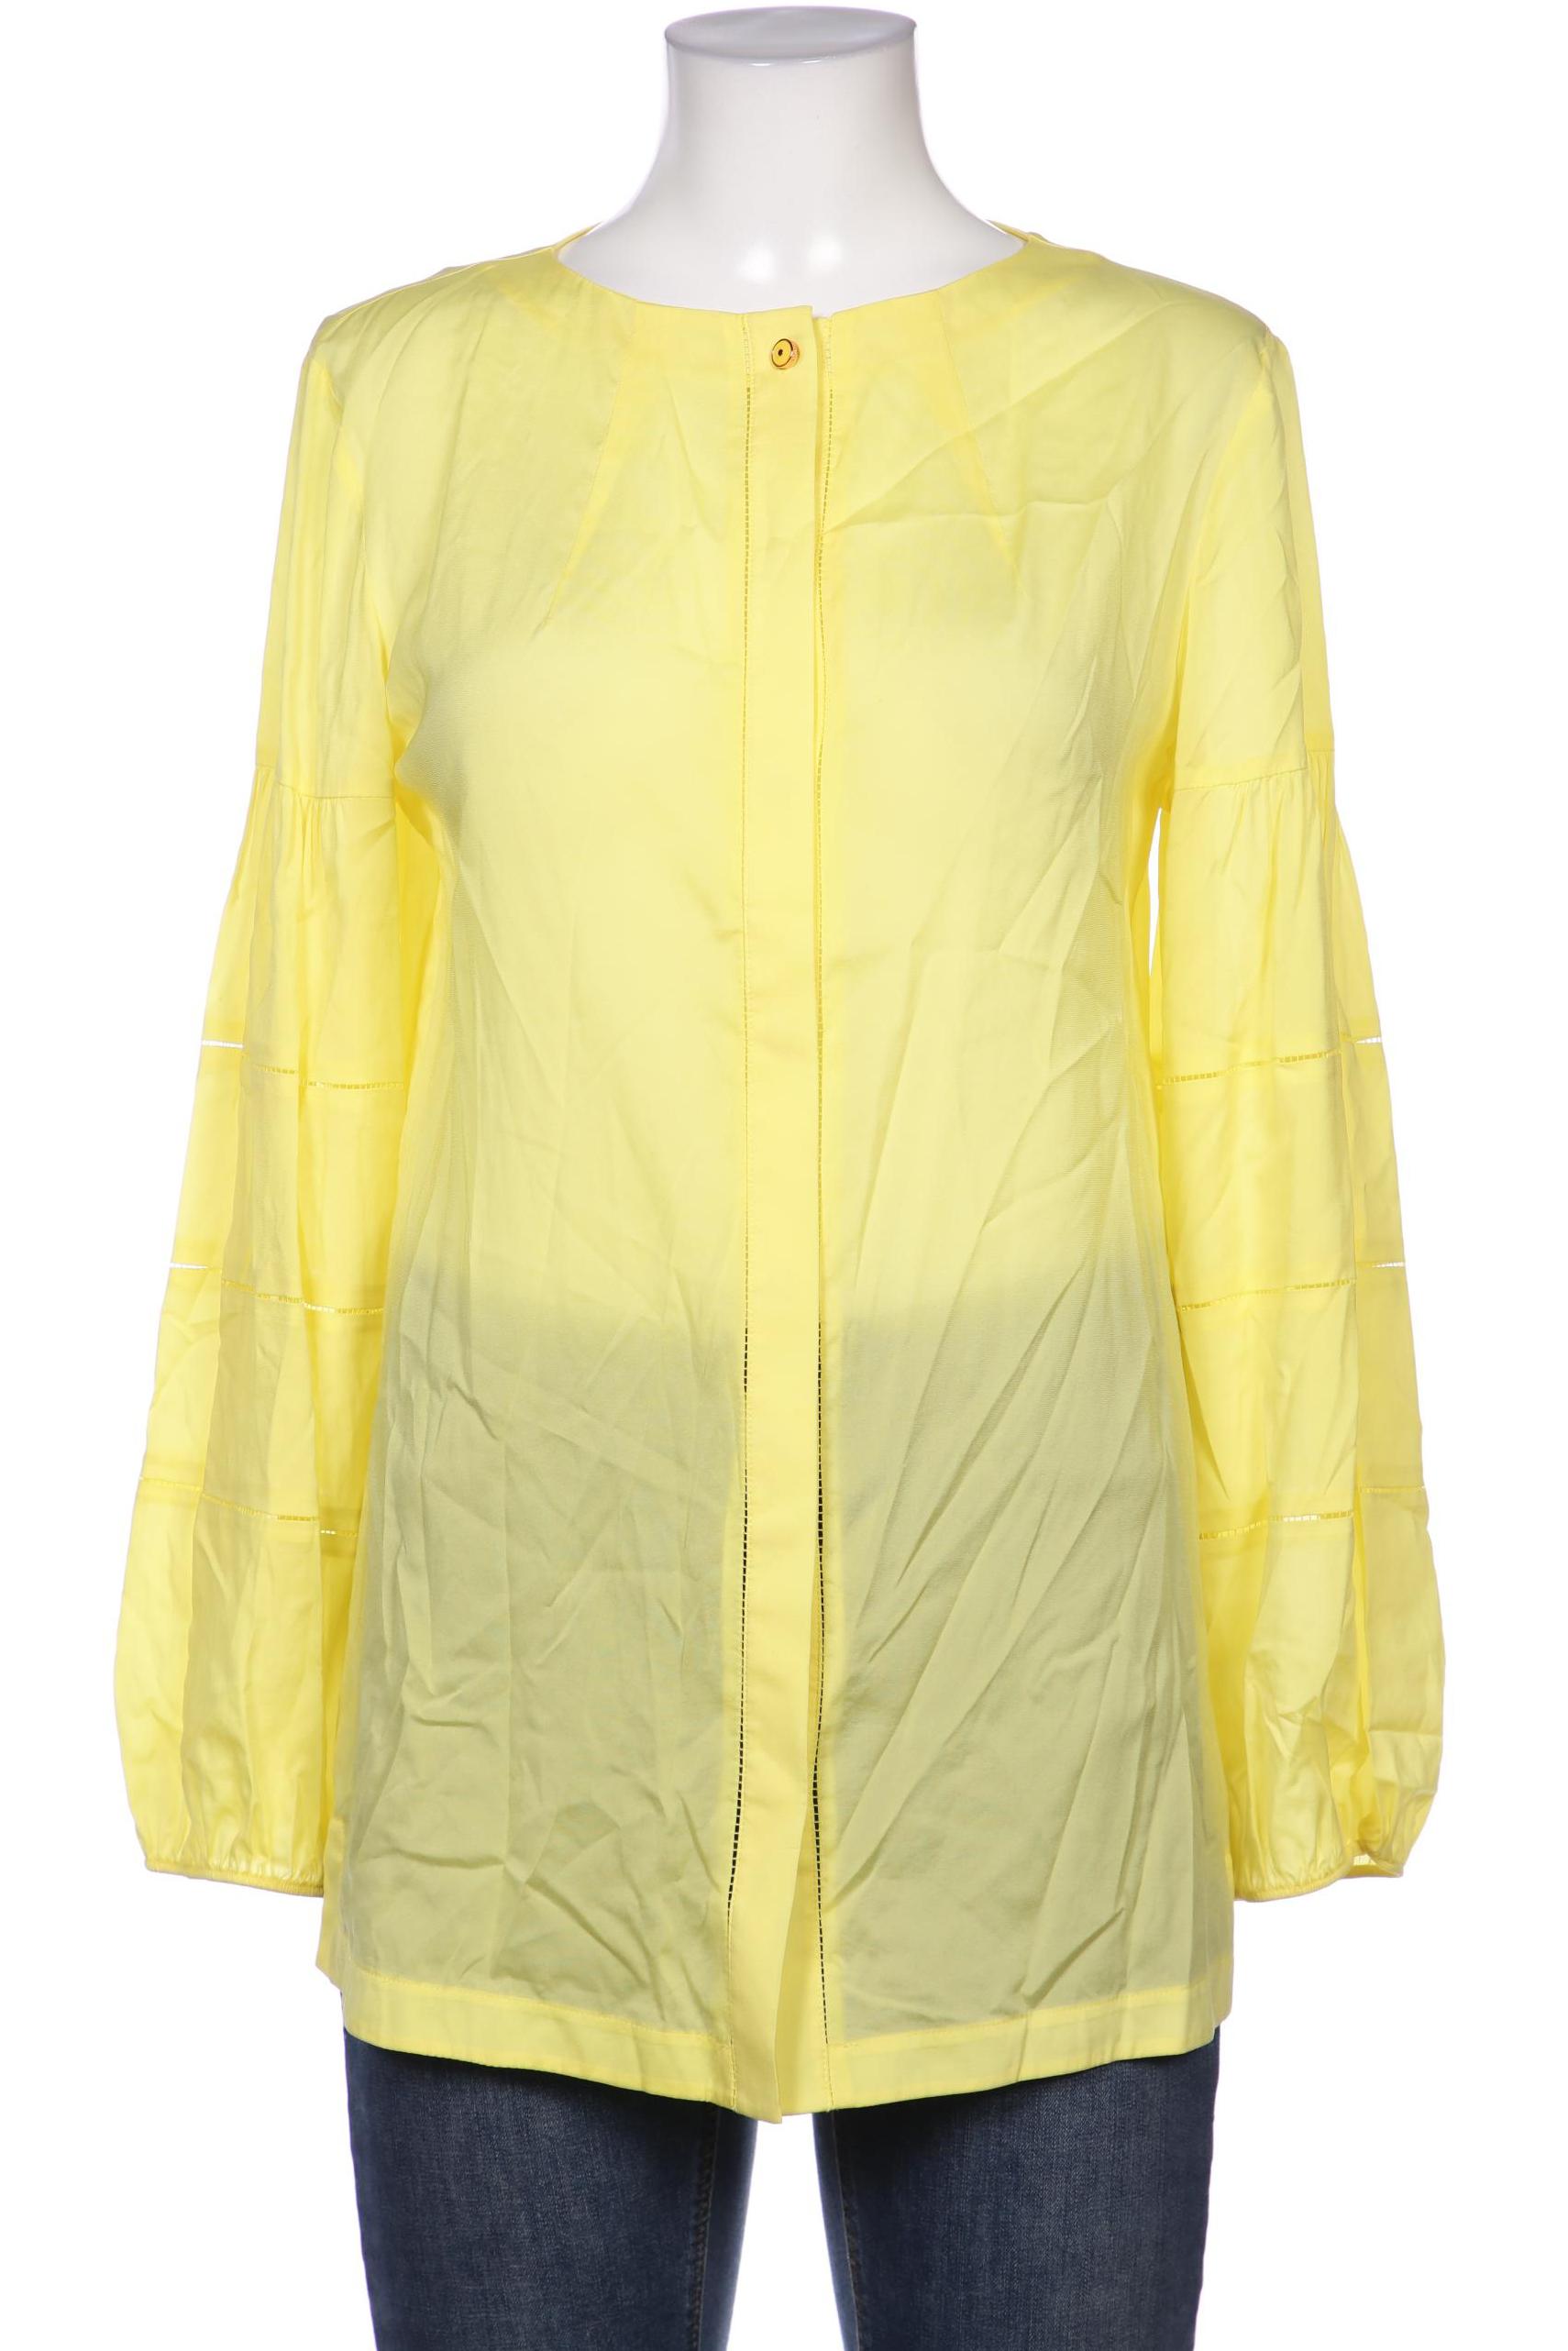 Escada Sport Damen Bluse, gelb, Gr. 36 von ESCADA SPORT